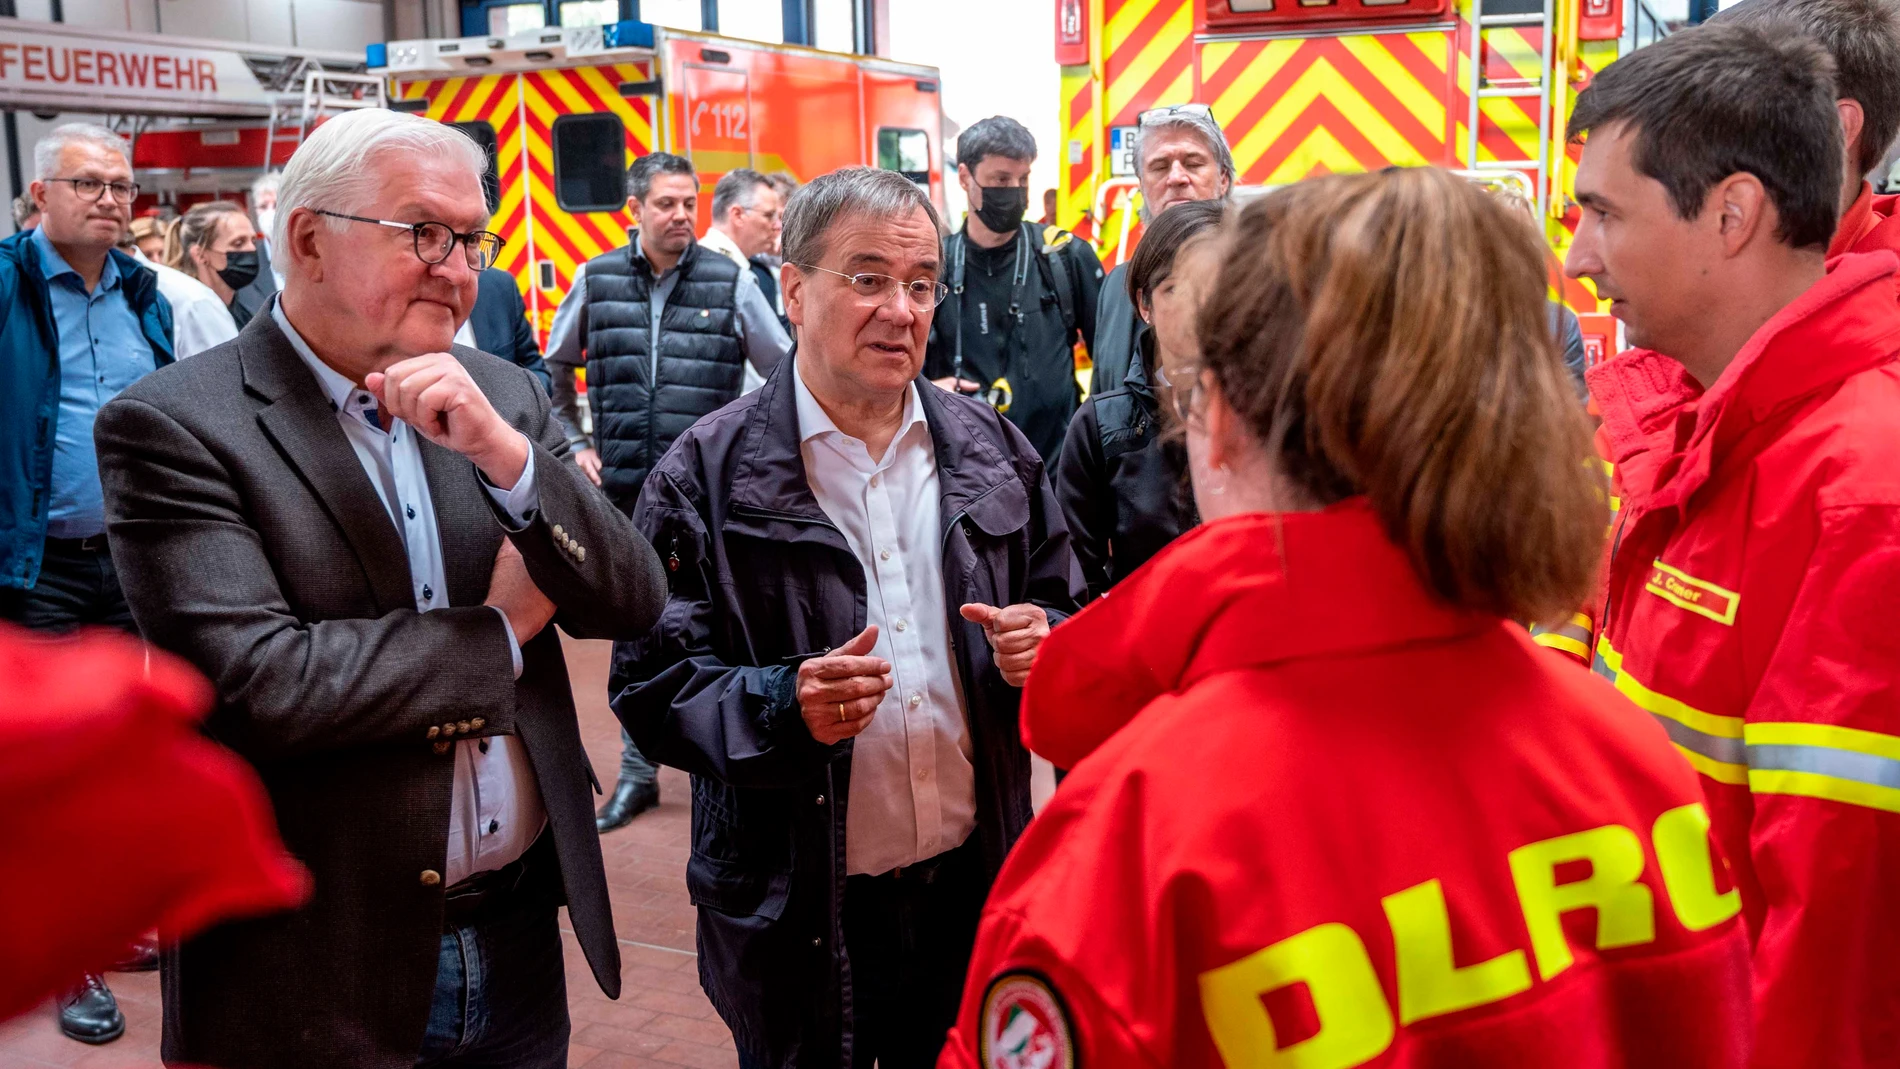 El presidente Frank-Walter Steinmeier y el primer ministro del Land y candidato de la CDU a las elecciones de septiembre Armin Laschet conversan con los equipos de rescate